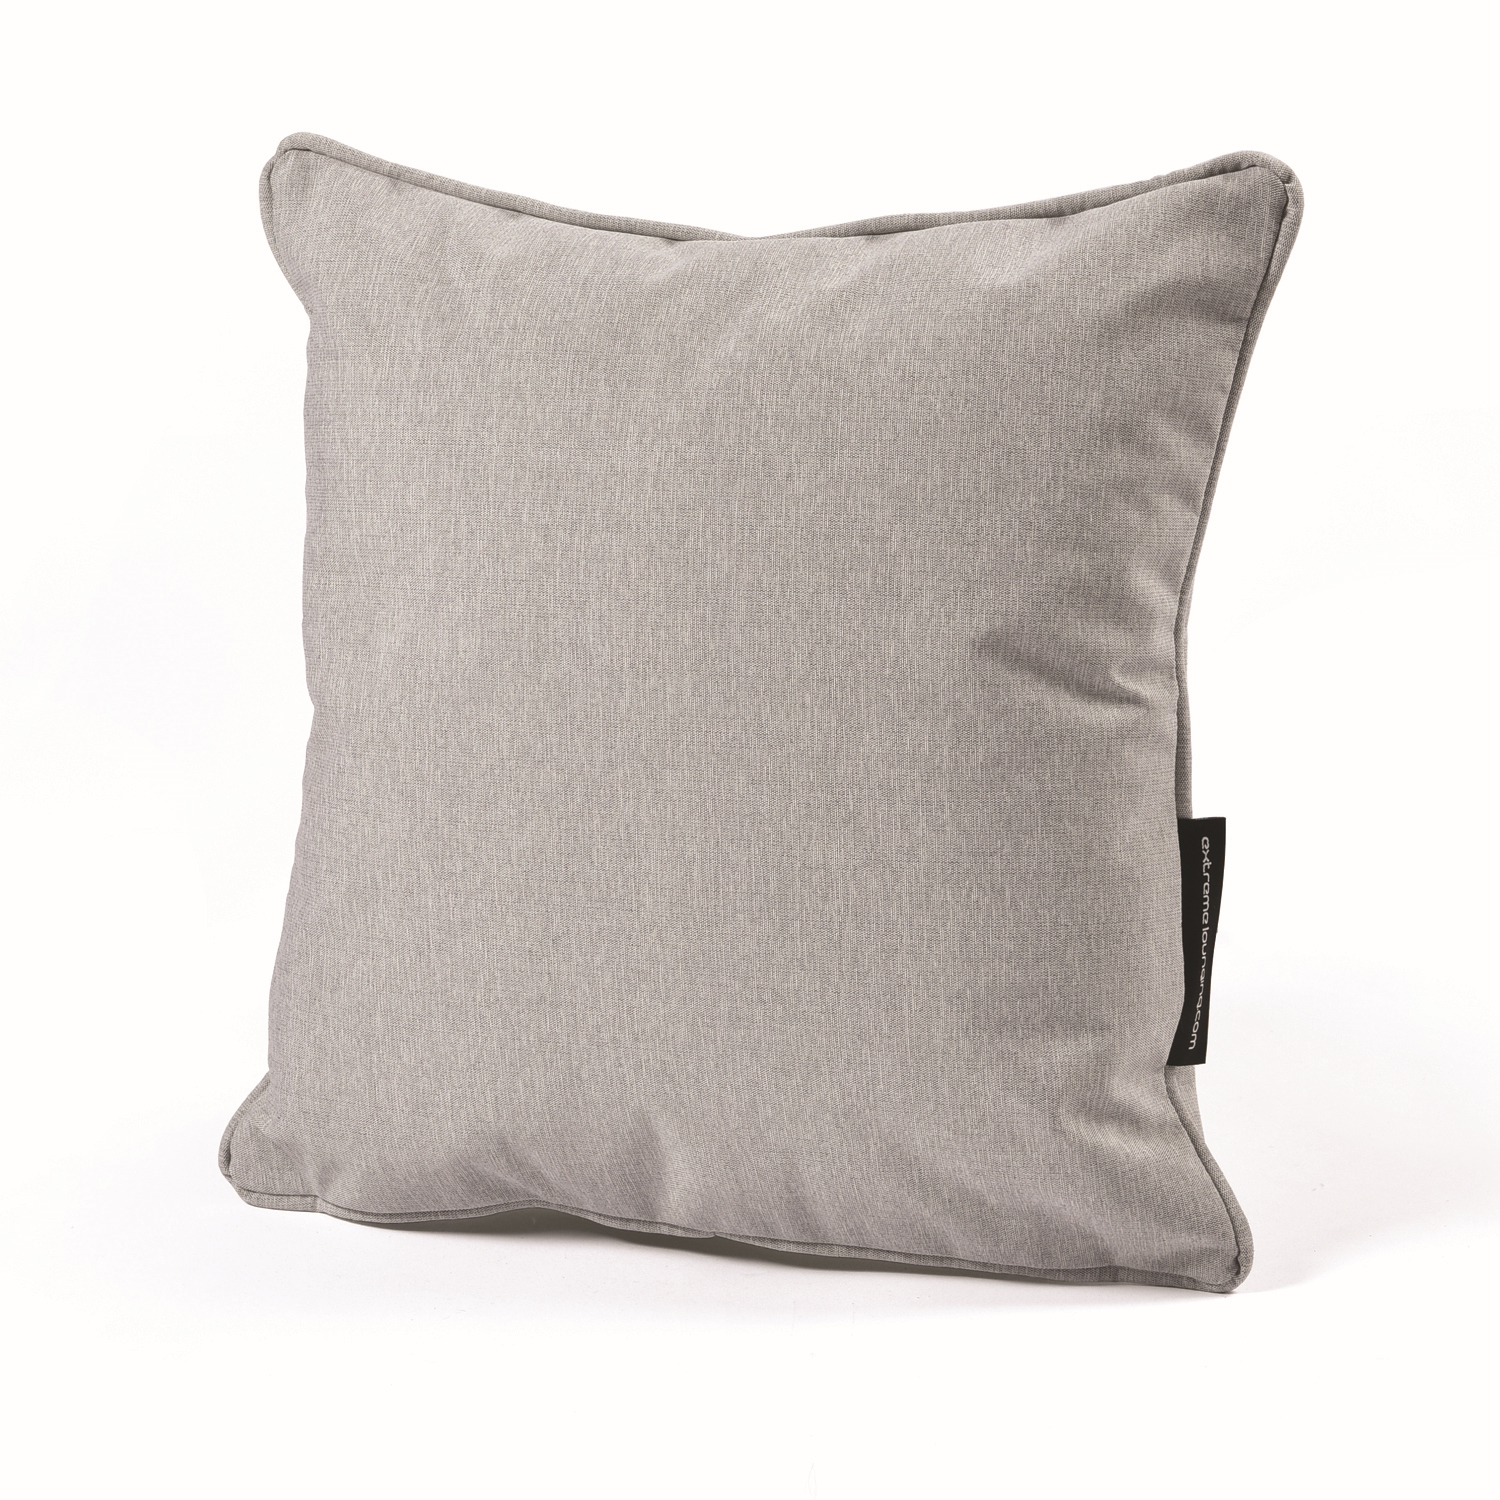 b-cushion extreme lounging Kissen Pastellgrau 40x40cm leicht wasserabweisend pflegeleicht UV-beständig